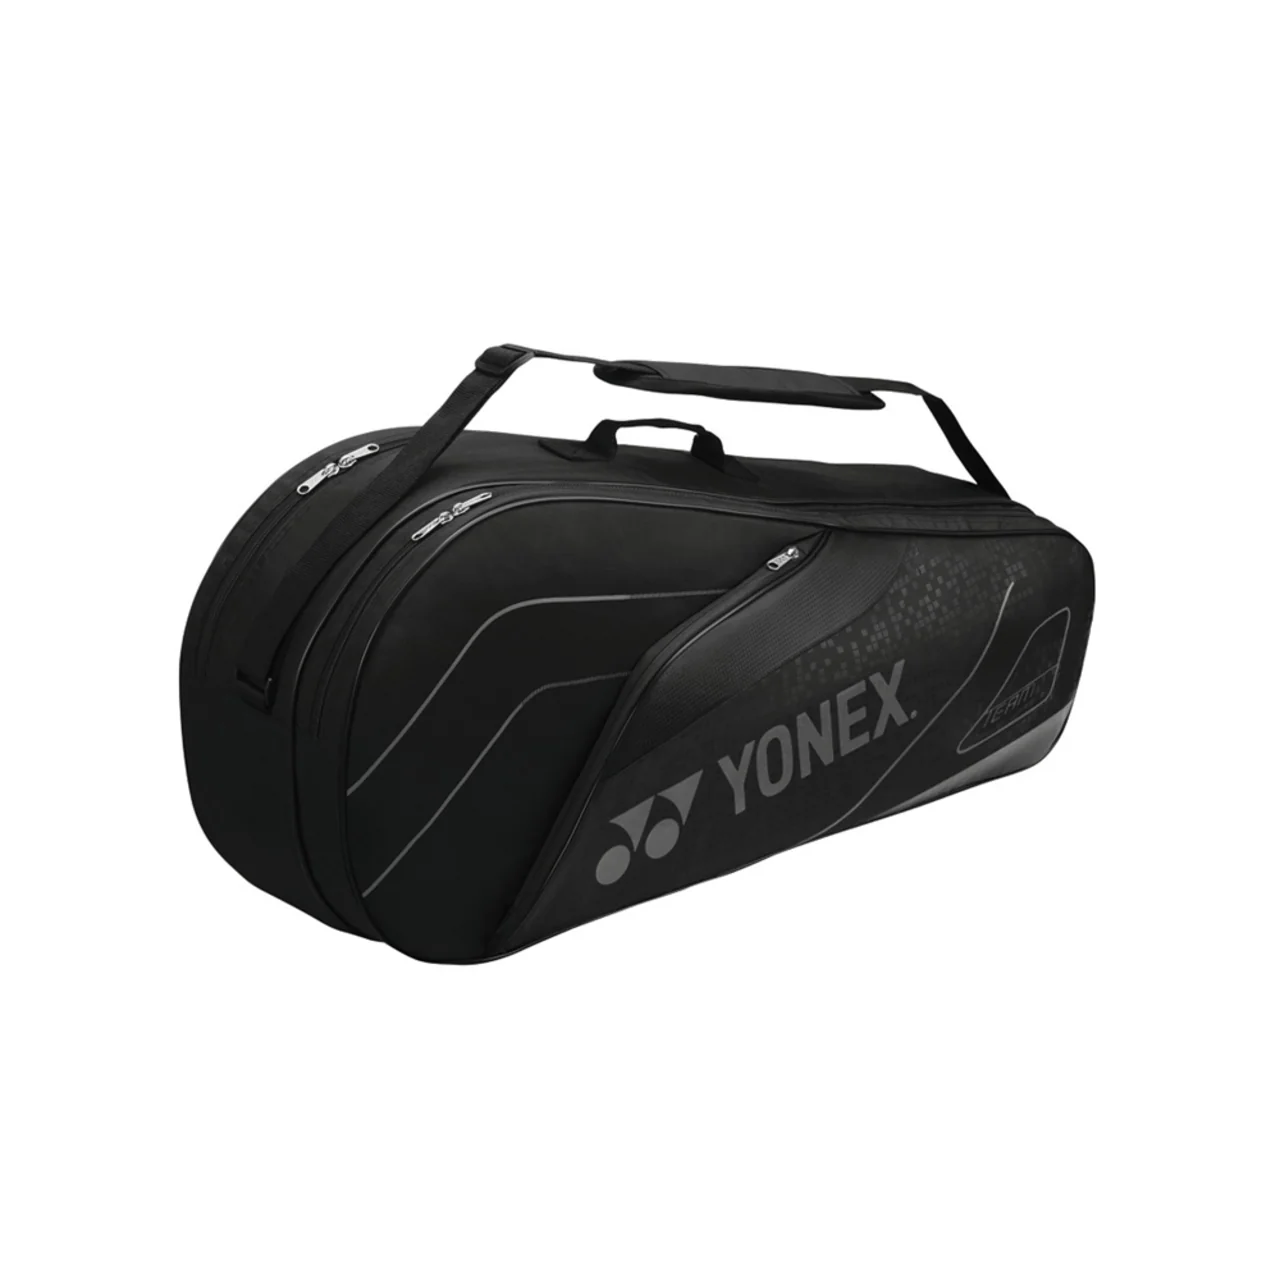 Yonex Team Bag x6 Black 2019